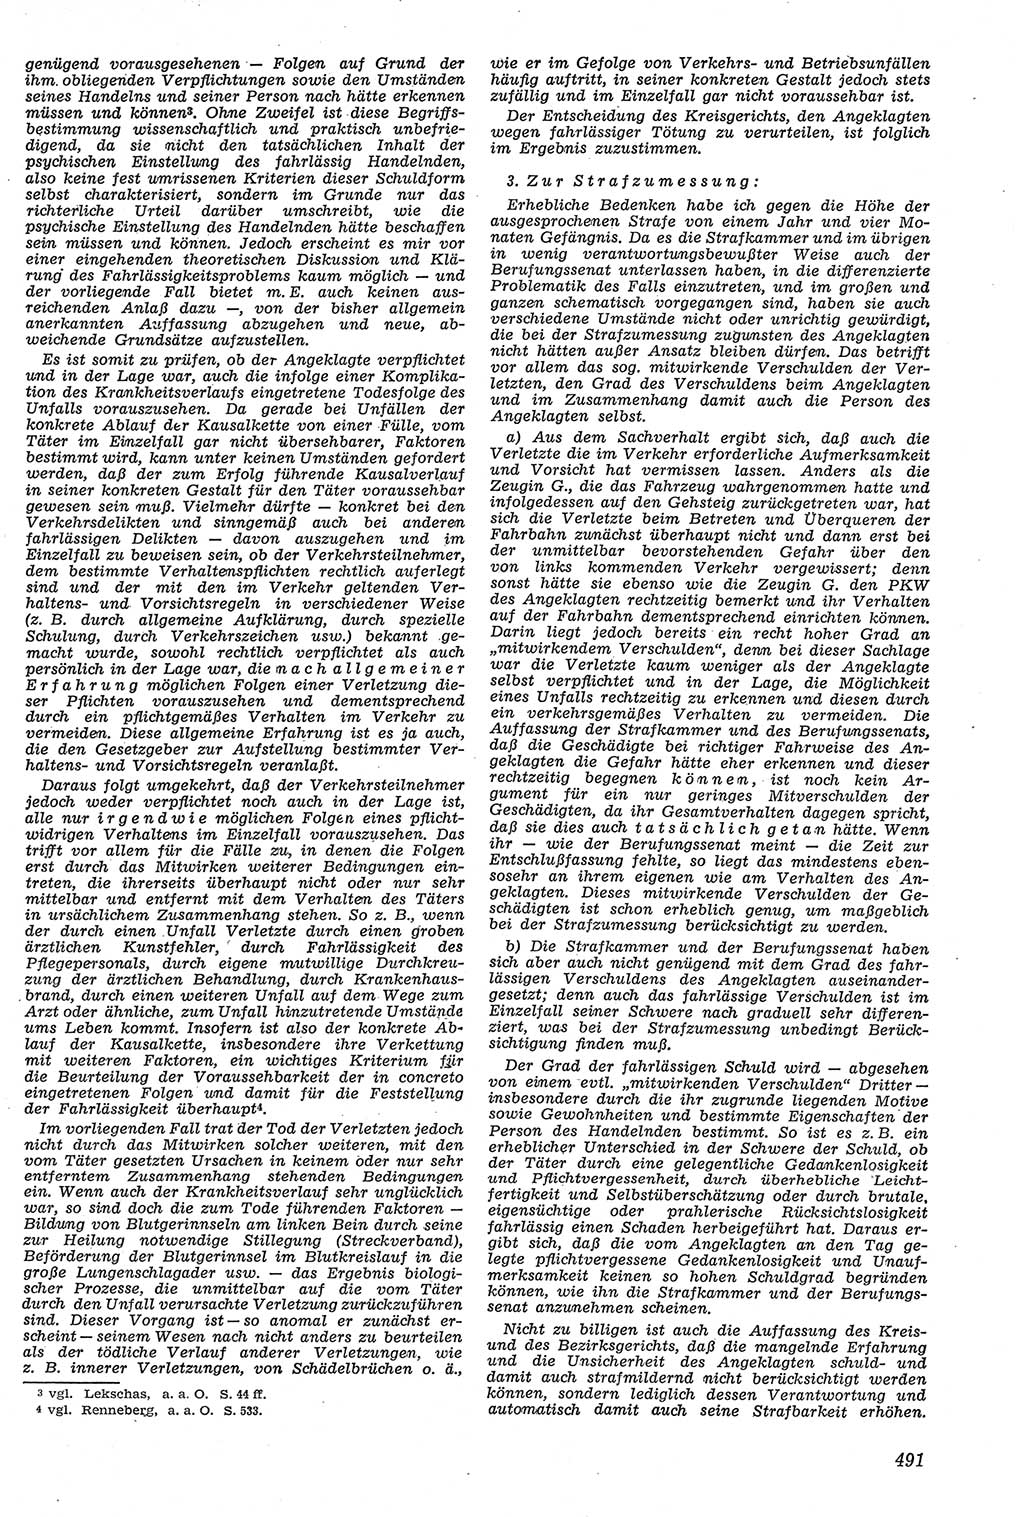 Neue Justiz (NJ), Zeitschrift für Recht und Rechtswissenschaft [Deutsche Demokratische Republik (DDR)], 11. Jahrgang 1957, Seite 491 (NJ DDR 1957, S. 491)